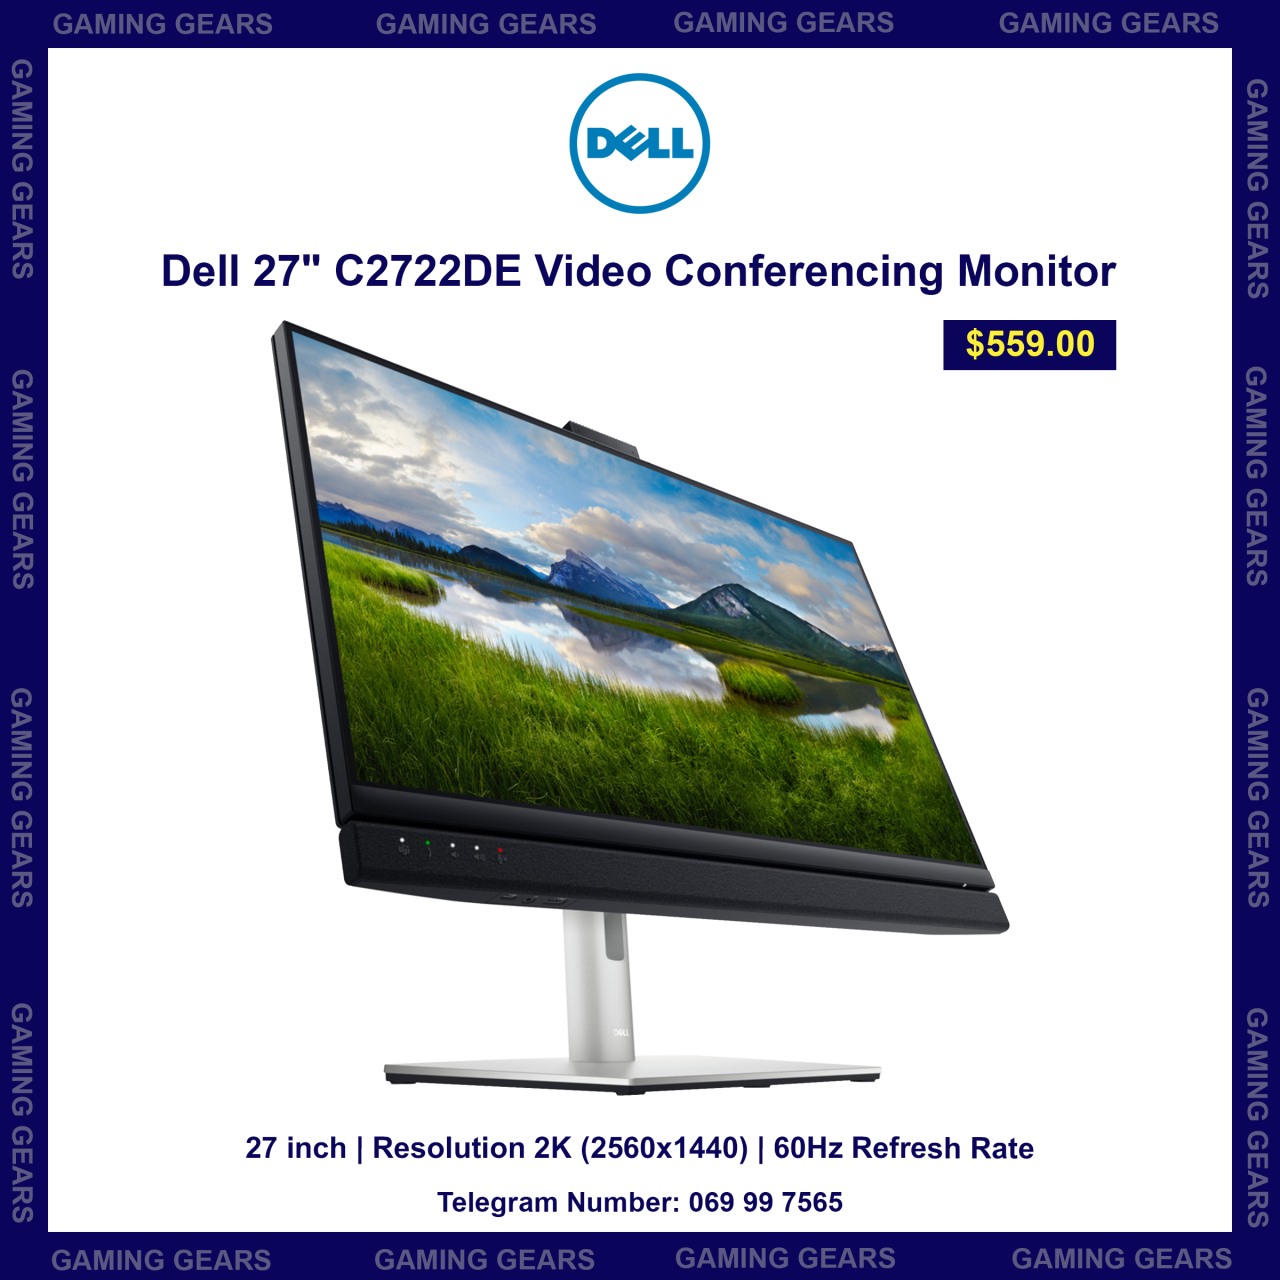 Dell 27" C2722DE Video Conferencing Monitor